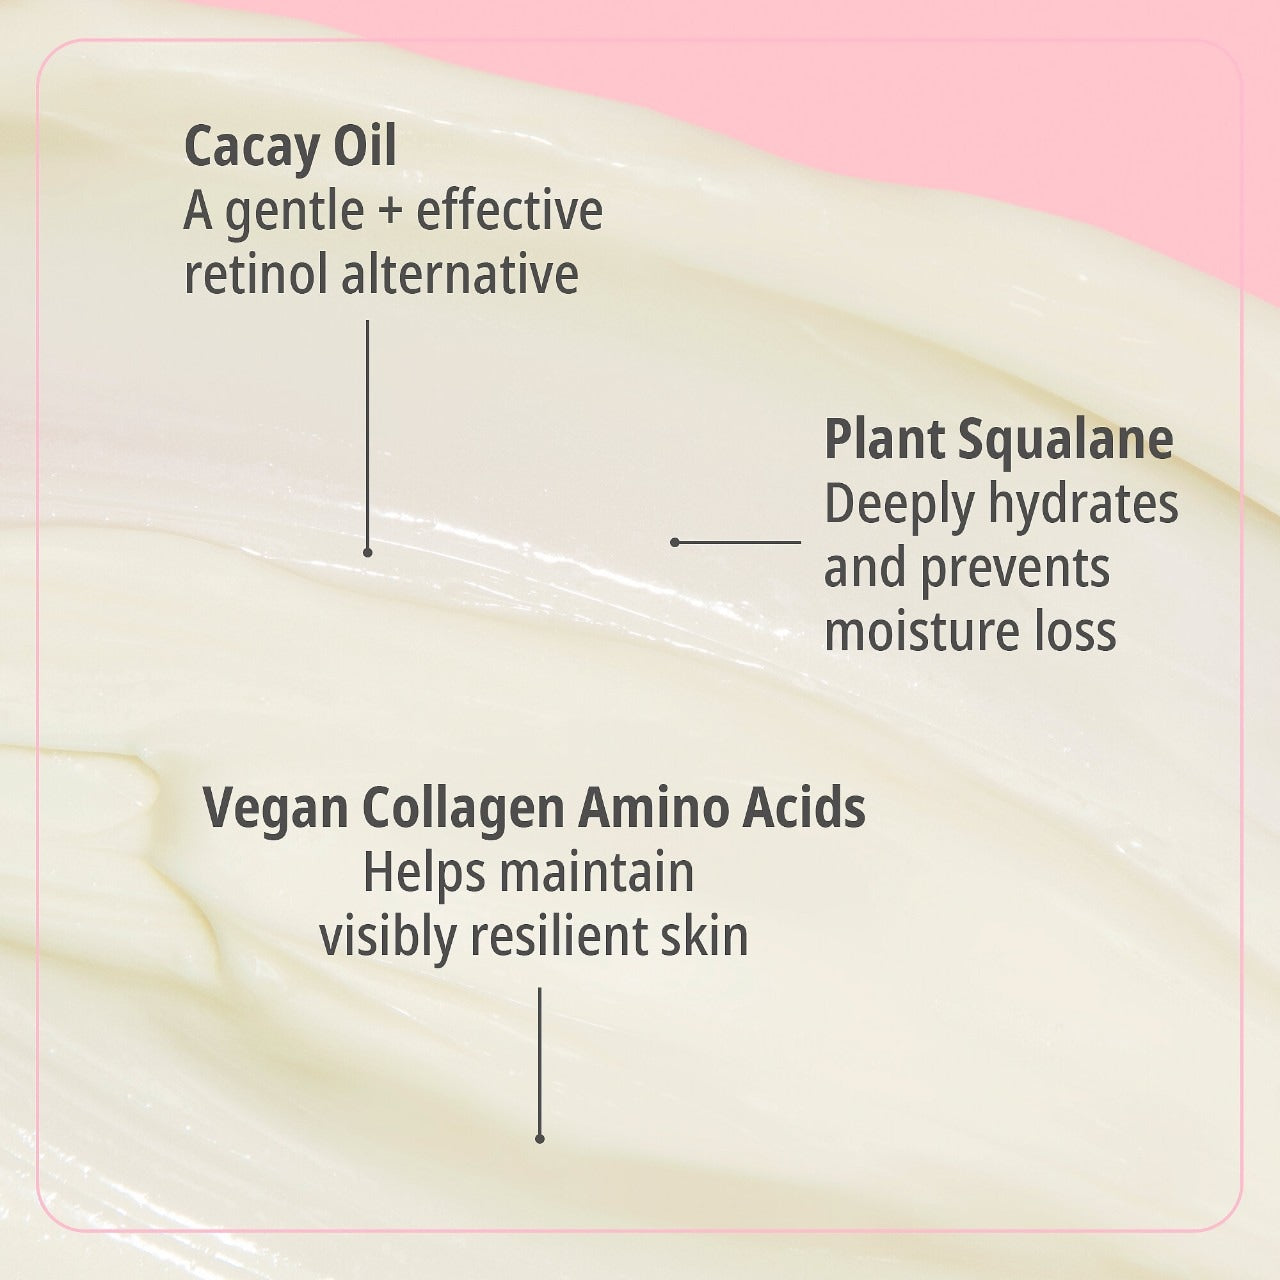 SOL DE JANIERO - Beija Flor™ Collagen-Boosting Elasti-Cream with Bio-Retinol and Squalane